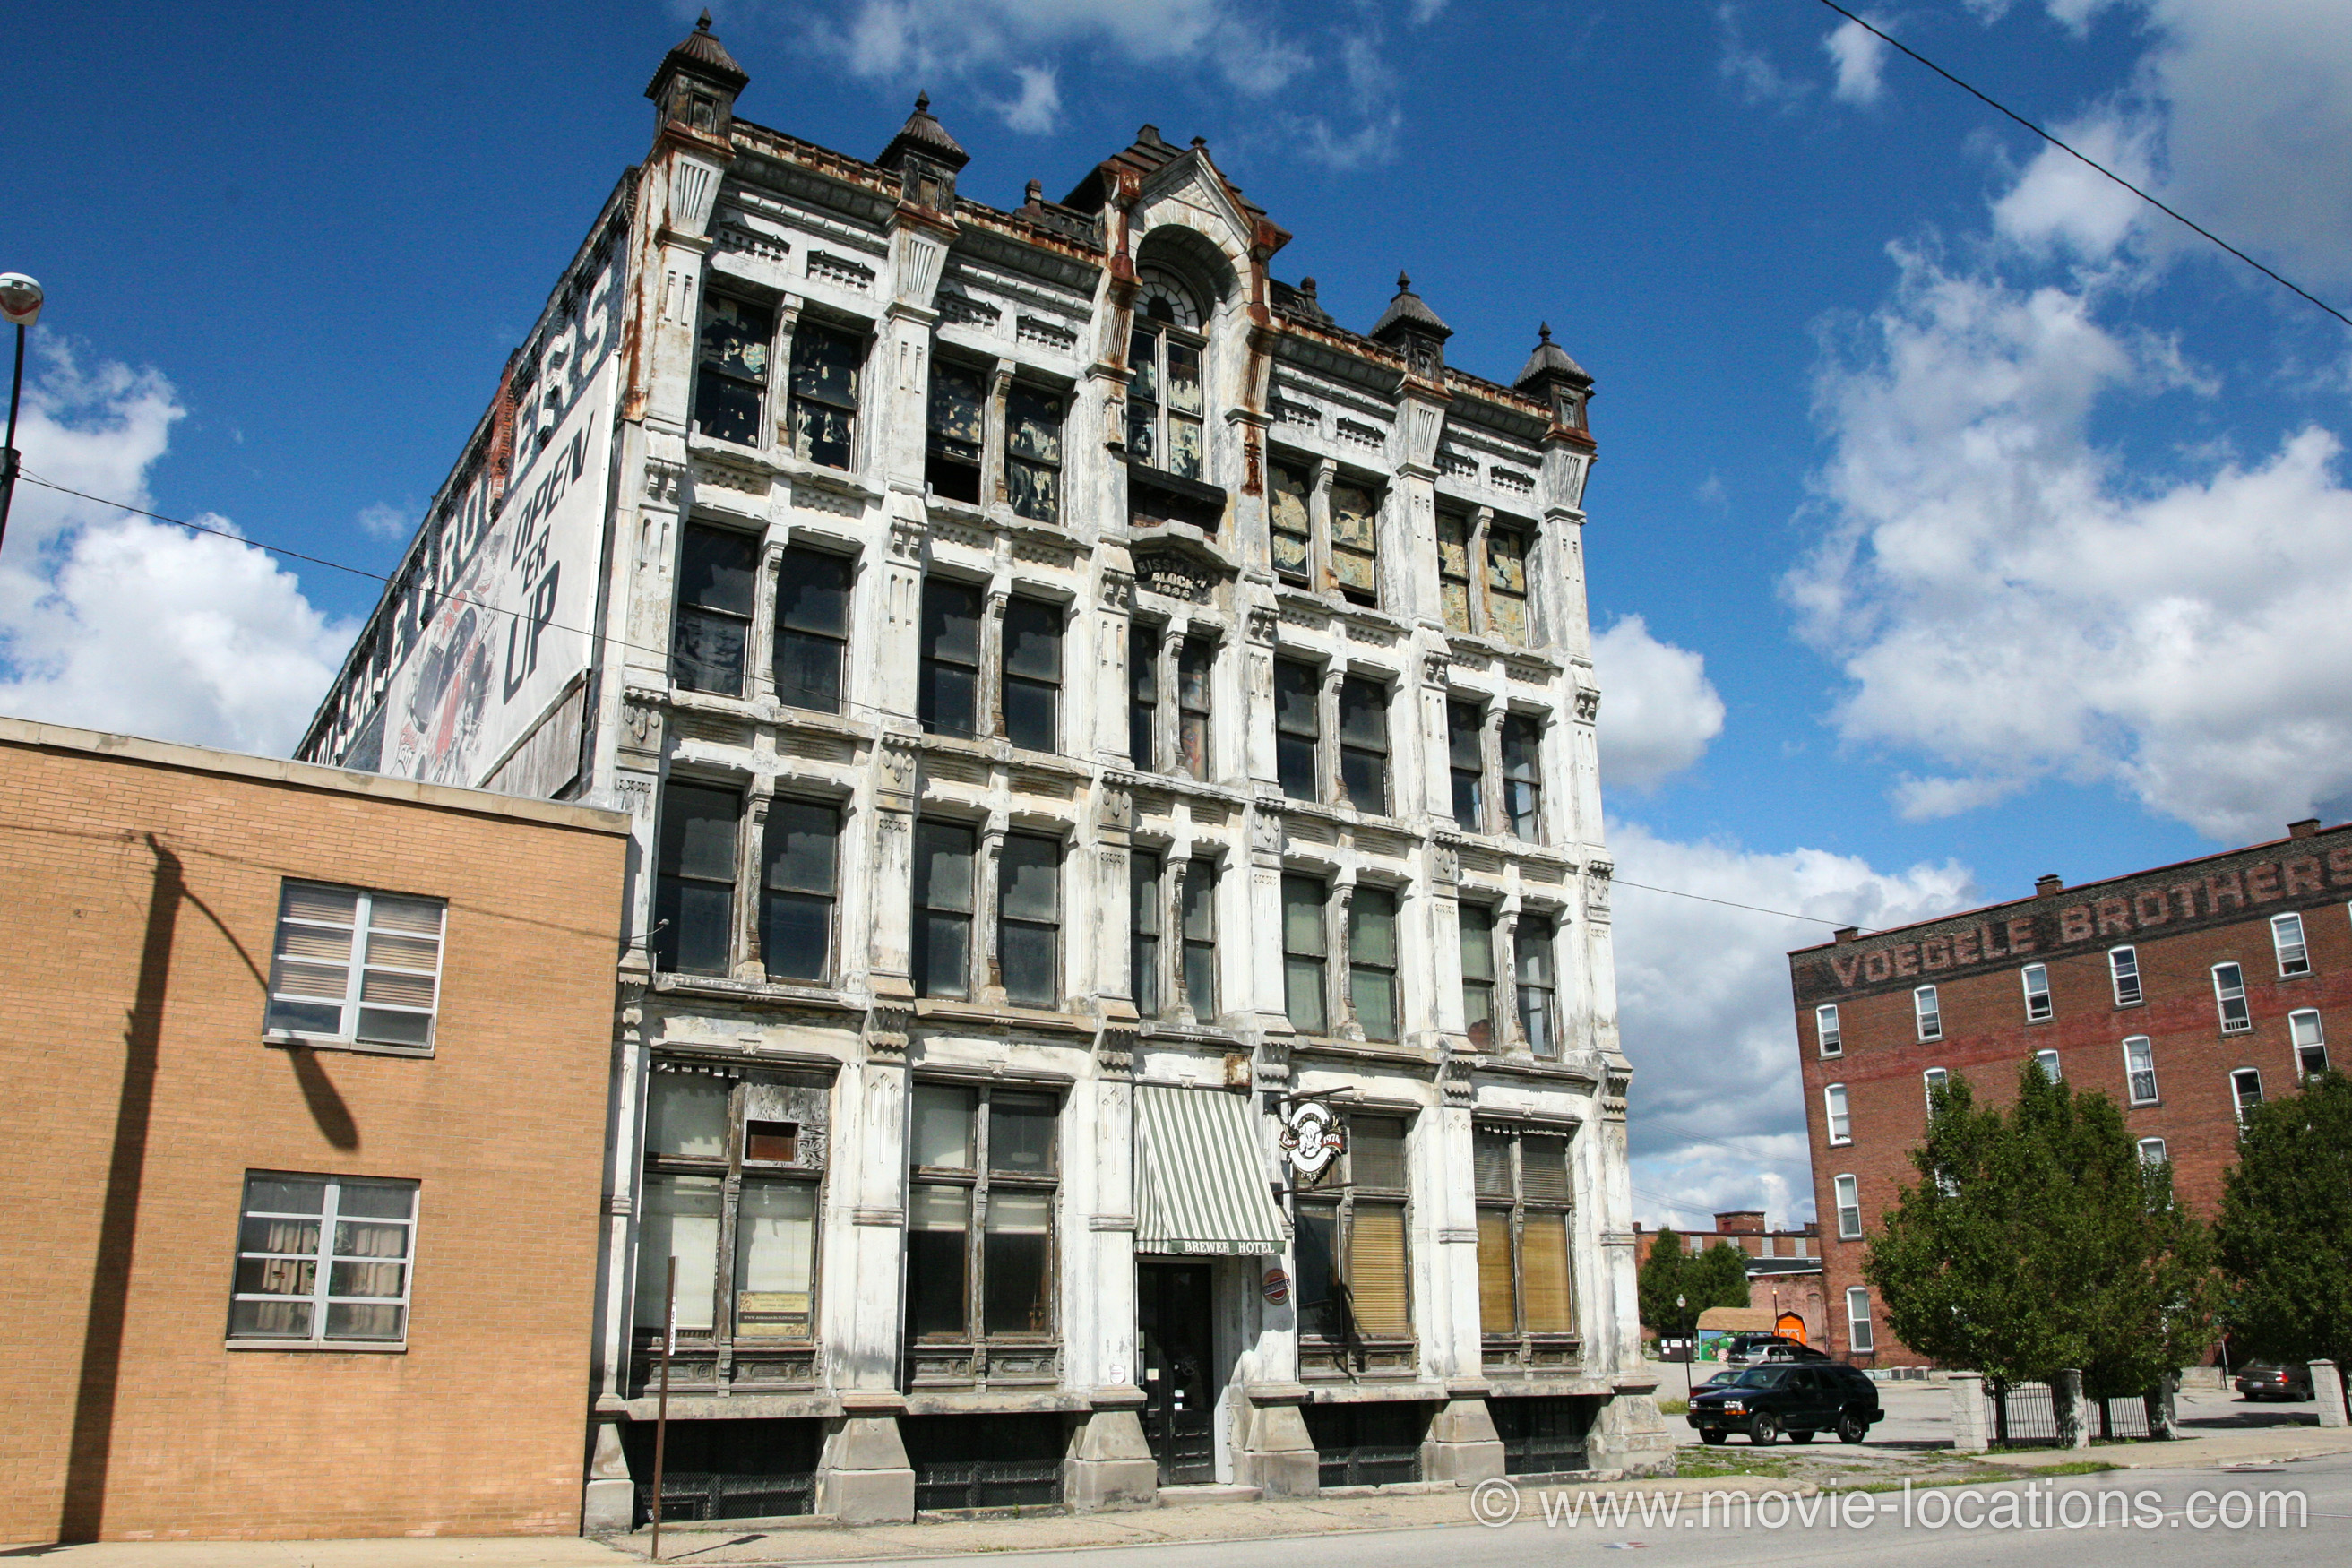 The Shawshank Redemption filming location: Bissman Building, North Main Street, Ohio